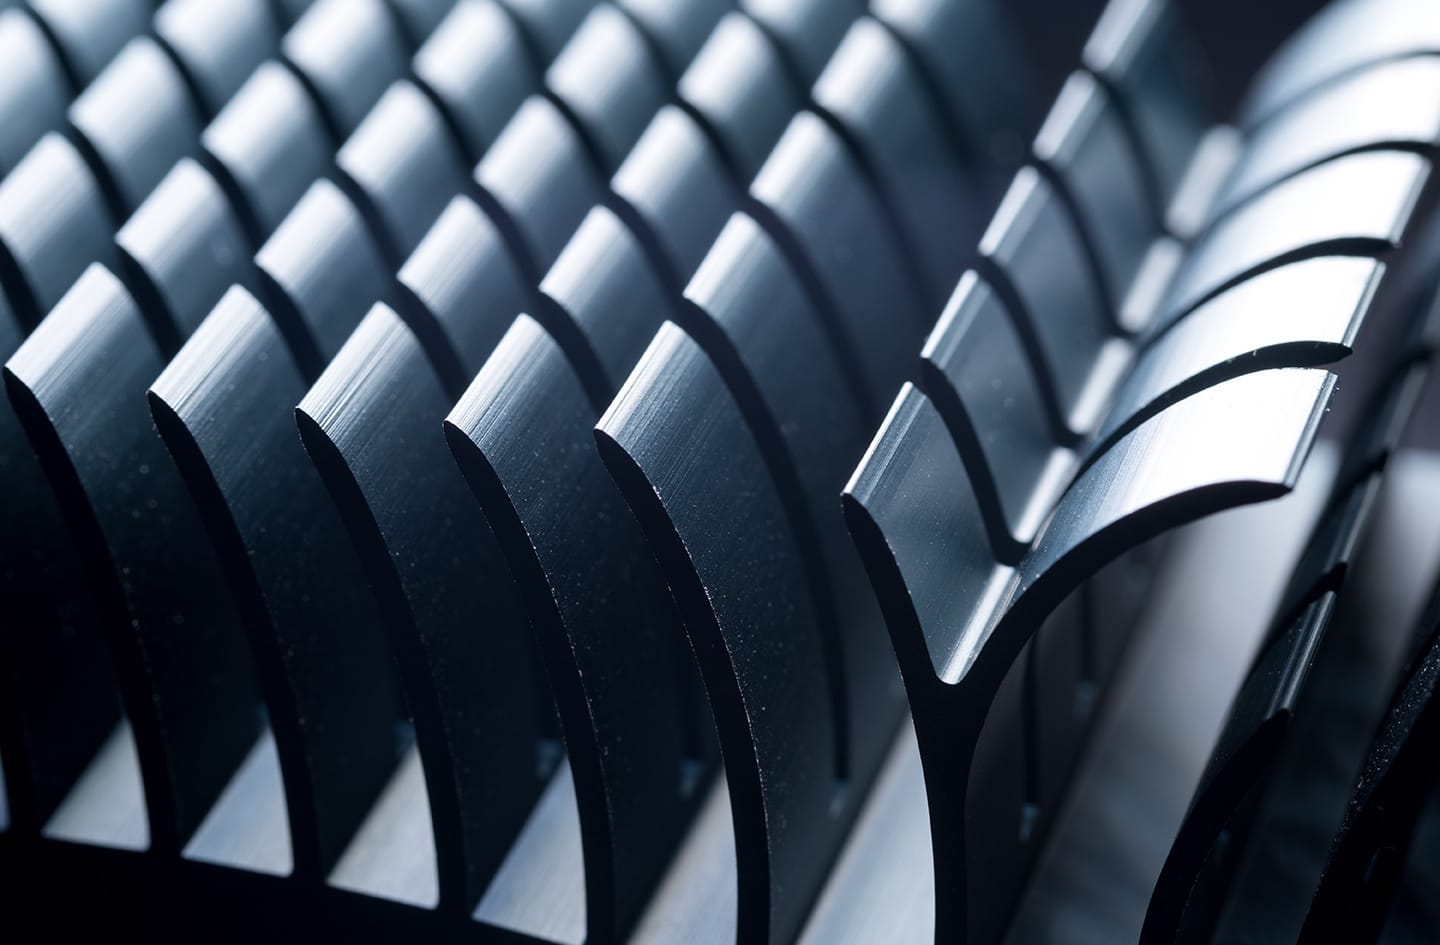 A close up image of a metal radiator.